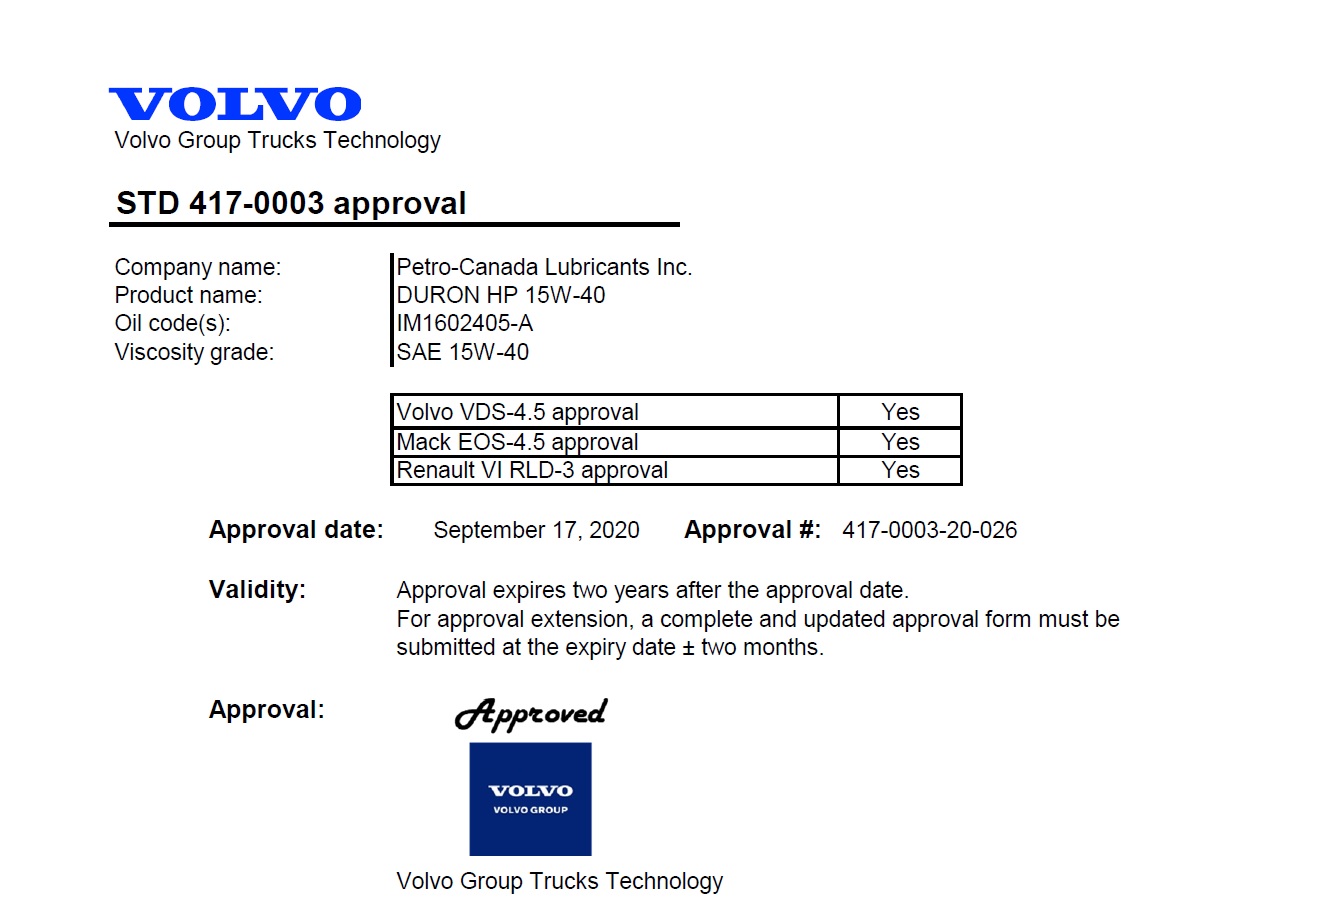 VOLVO VDS-4.5 jóváhagyás és Renault VI RLD-3 jóváhagyás